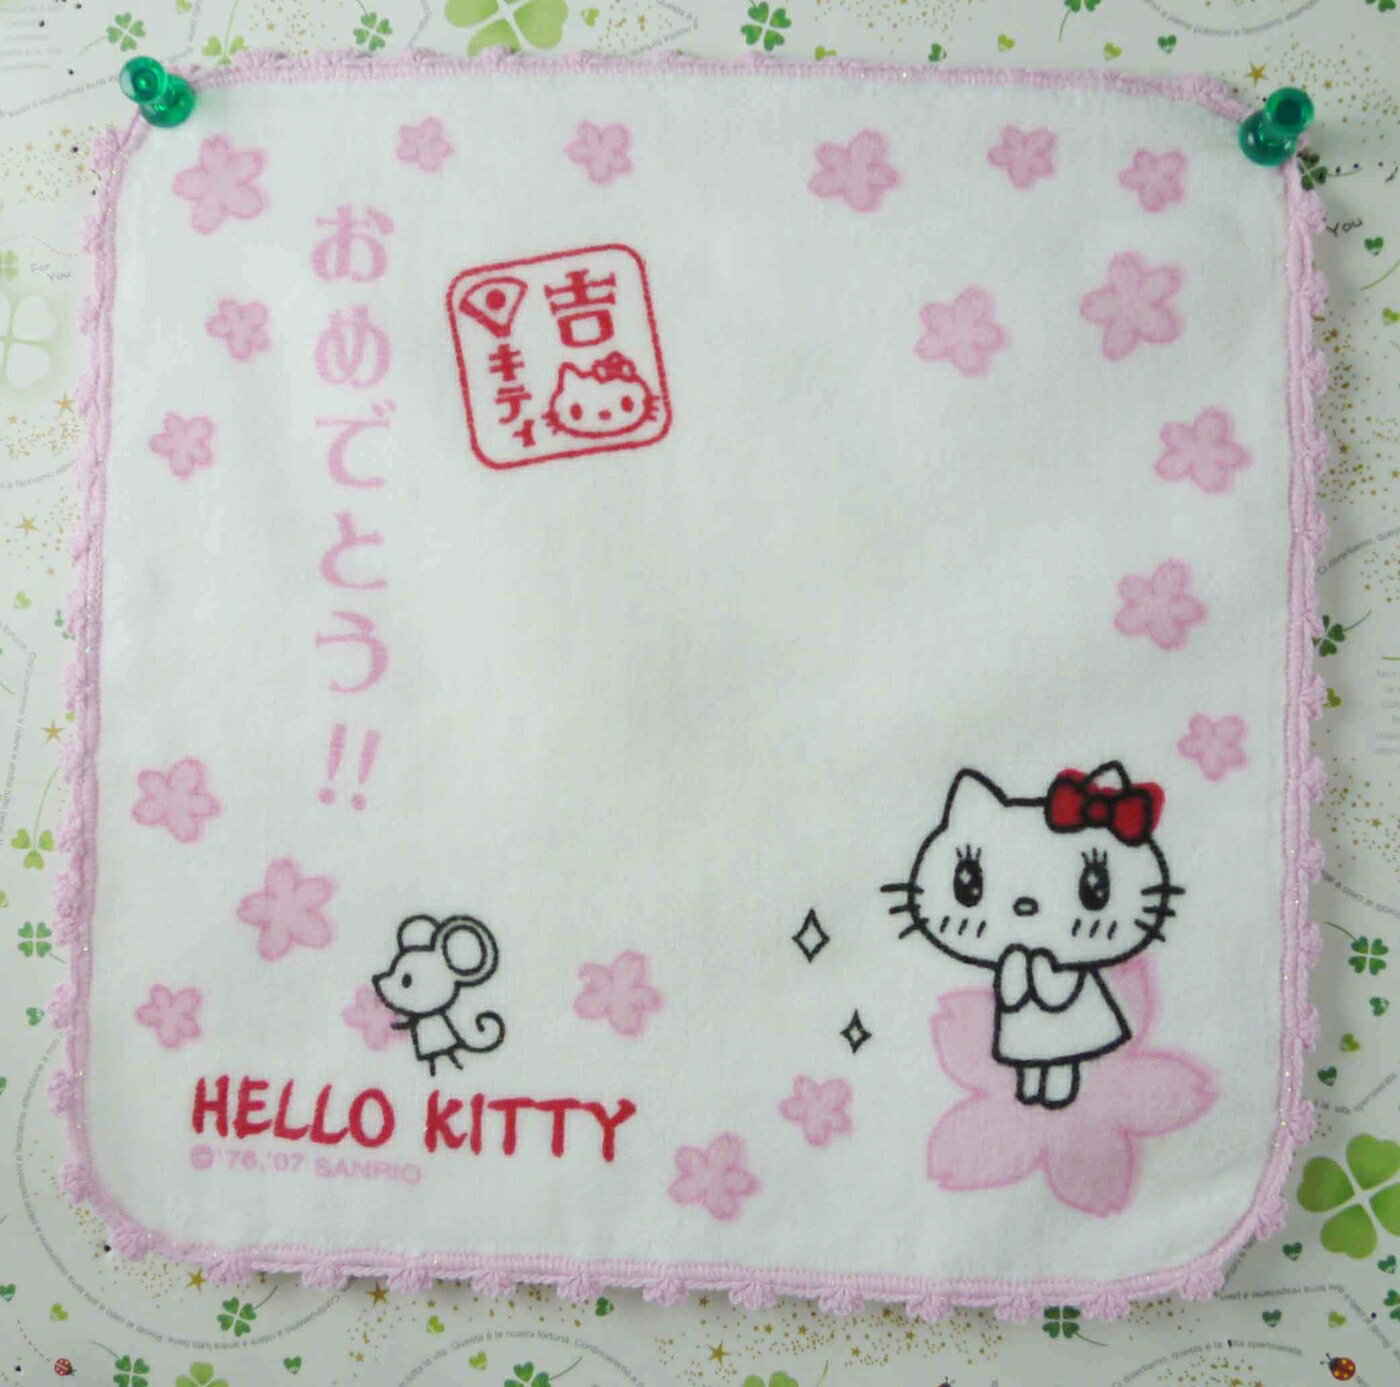 【震撼精品百貨】Hello Kitty 凱蒂貓 方巾/毛巾-Q版櫻花(吉)*57097 震撼日式精品百貨